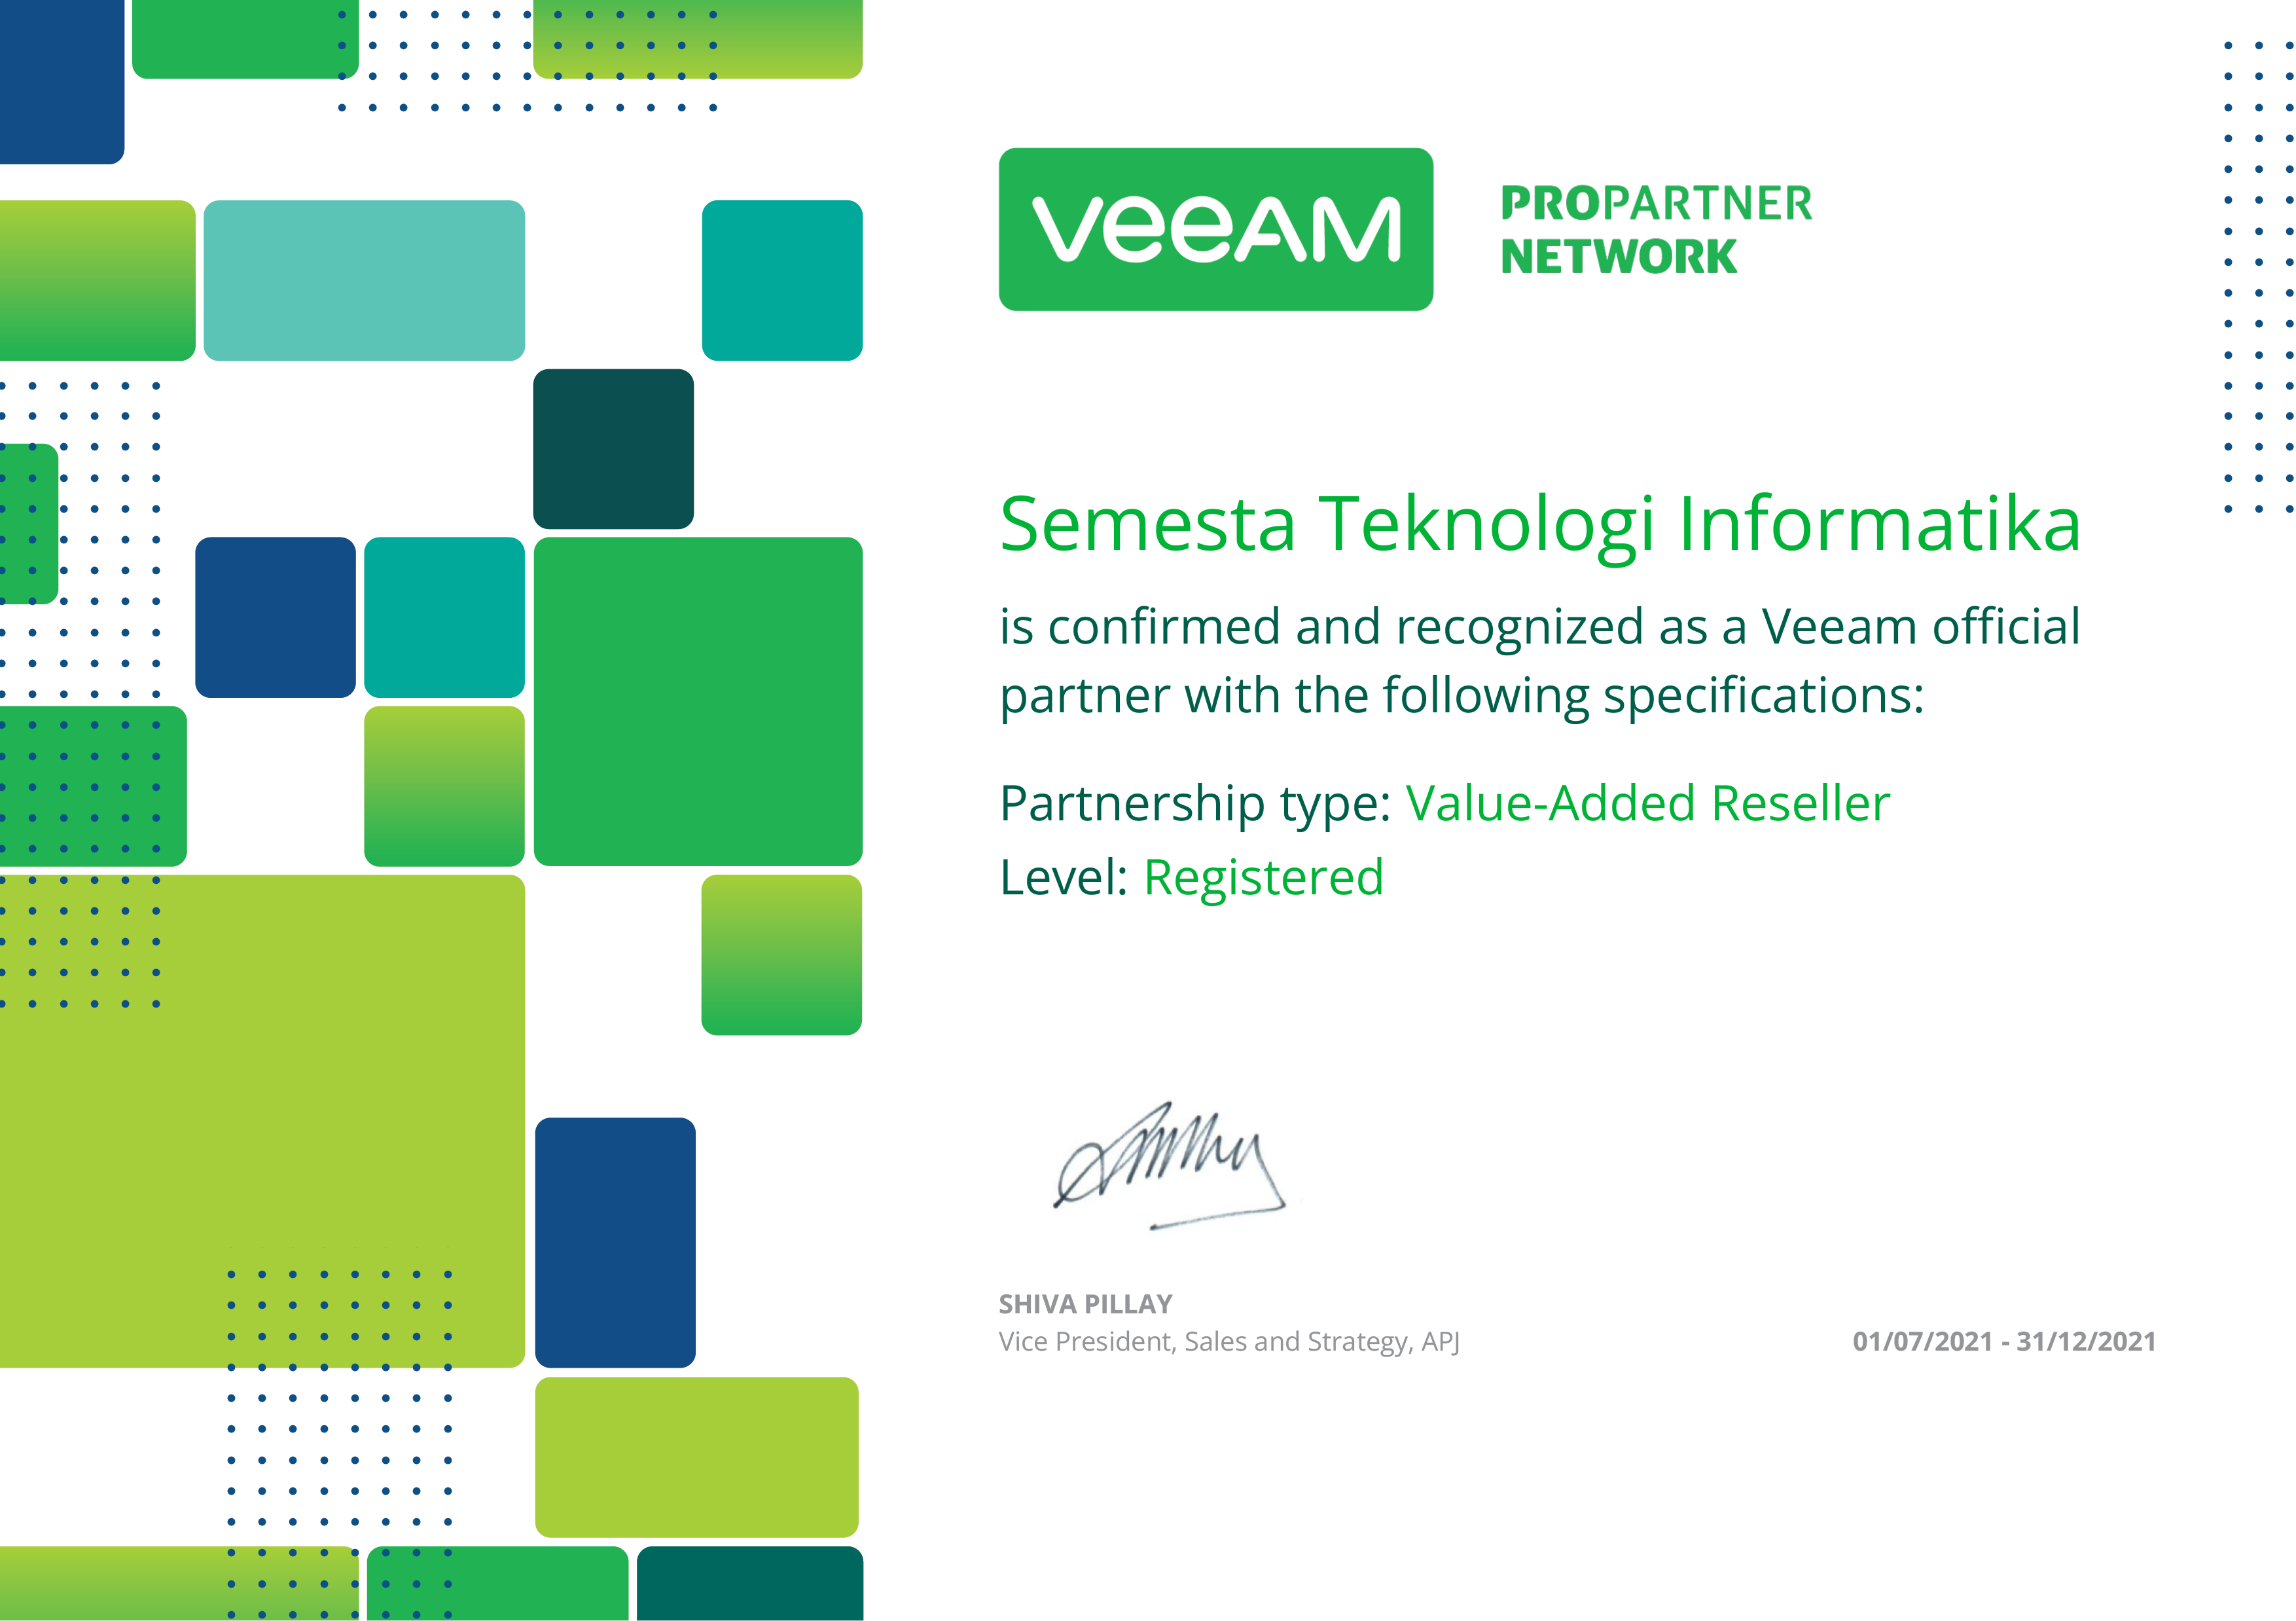 Veeam Value-Added Reseller Partnership